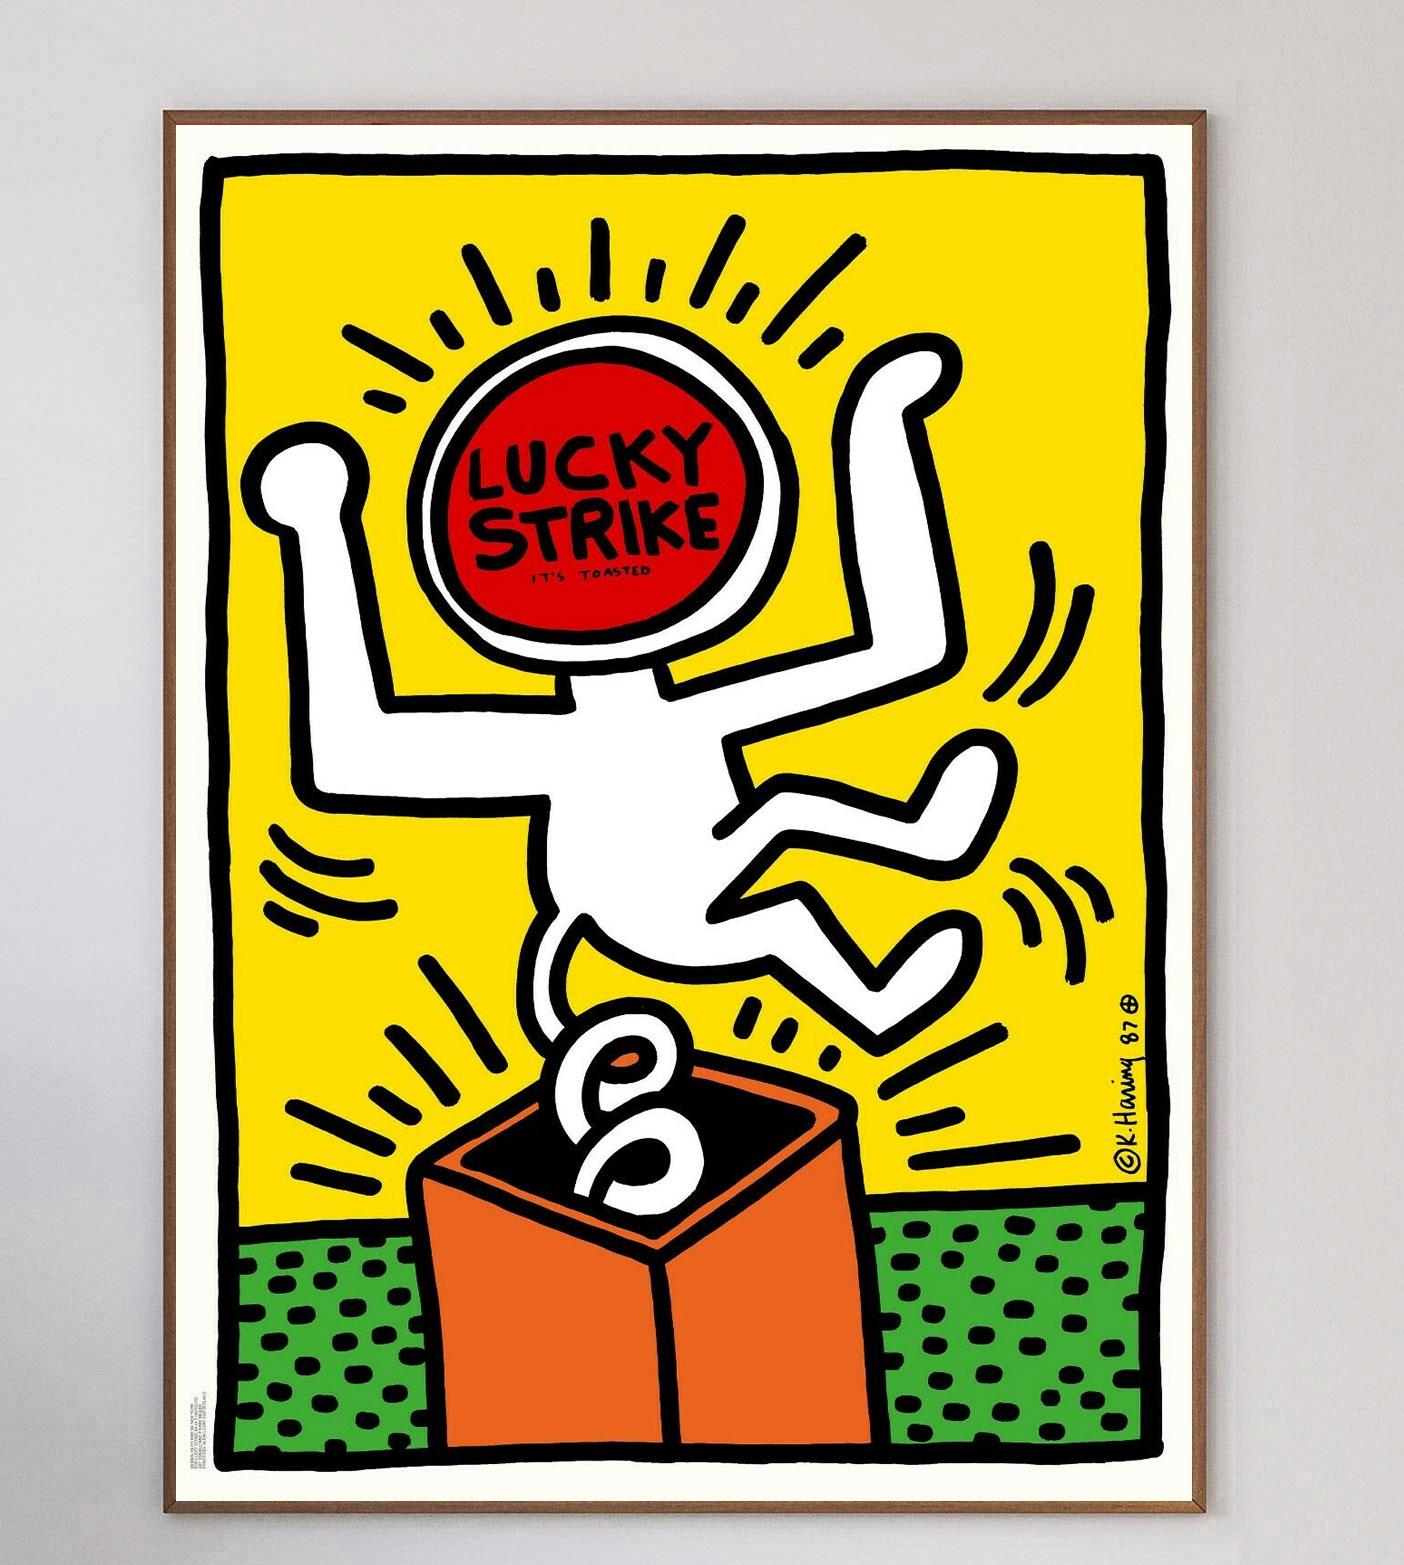 Die Zigarettenmarke Lucky Strike beauftragte Keith Haring 1987 mit der Gestaltung einer Reihe von Plakaten und Anzeigen für sie. Im Gegenzug reichte Haring 10 Werke in seinem charakteristischen und einzigartigen Stil ein, von denen 9 angenommen